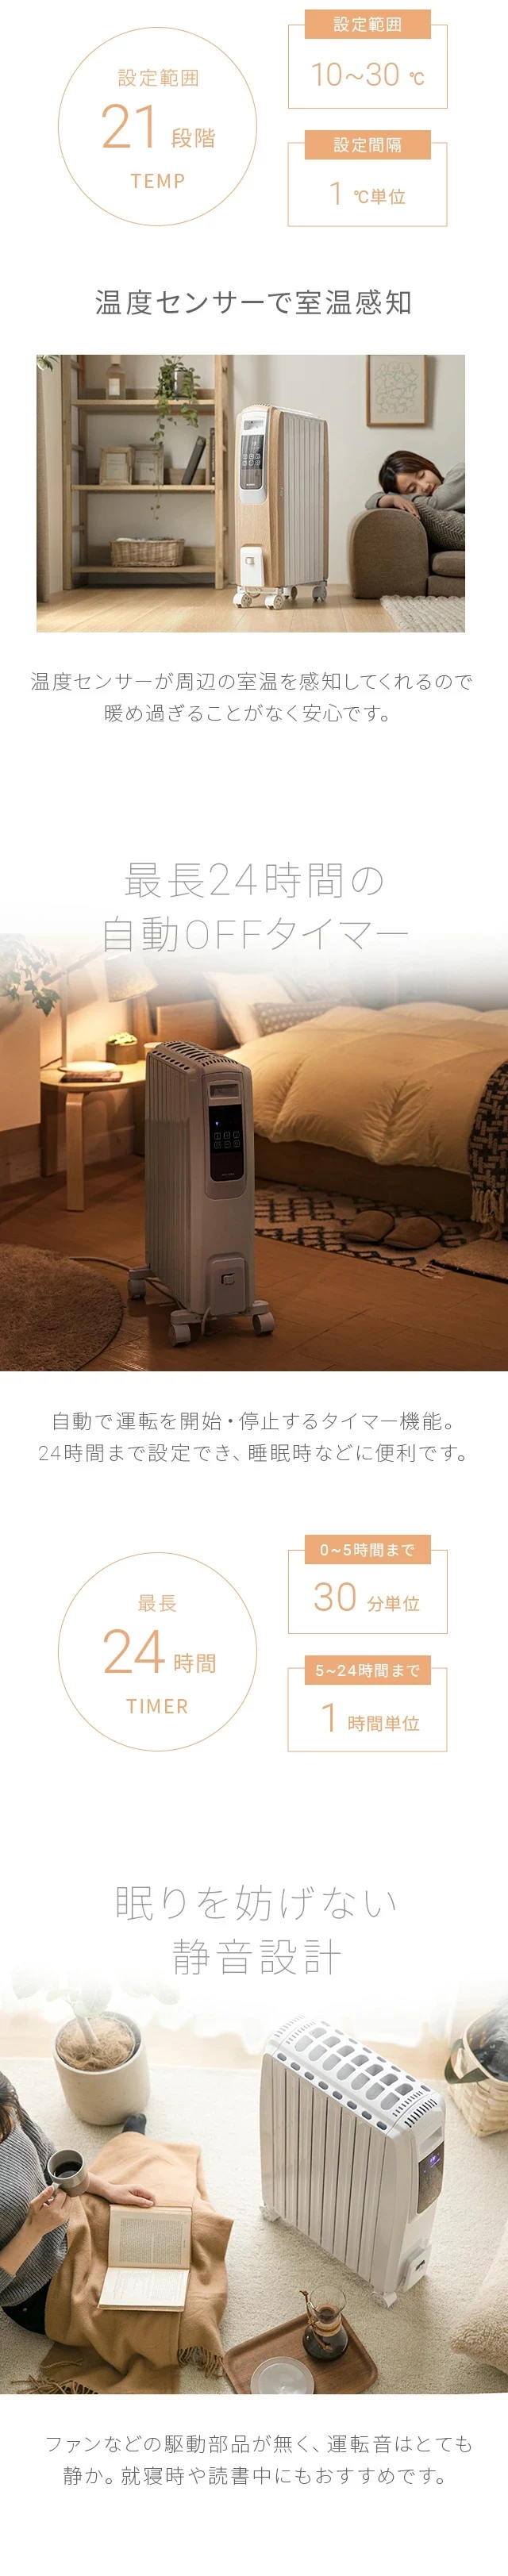 温度センサーで室温感知、最長24時間の自動OFFタイマー、眠りを妨げない静音設計